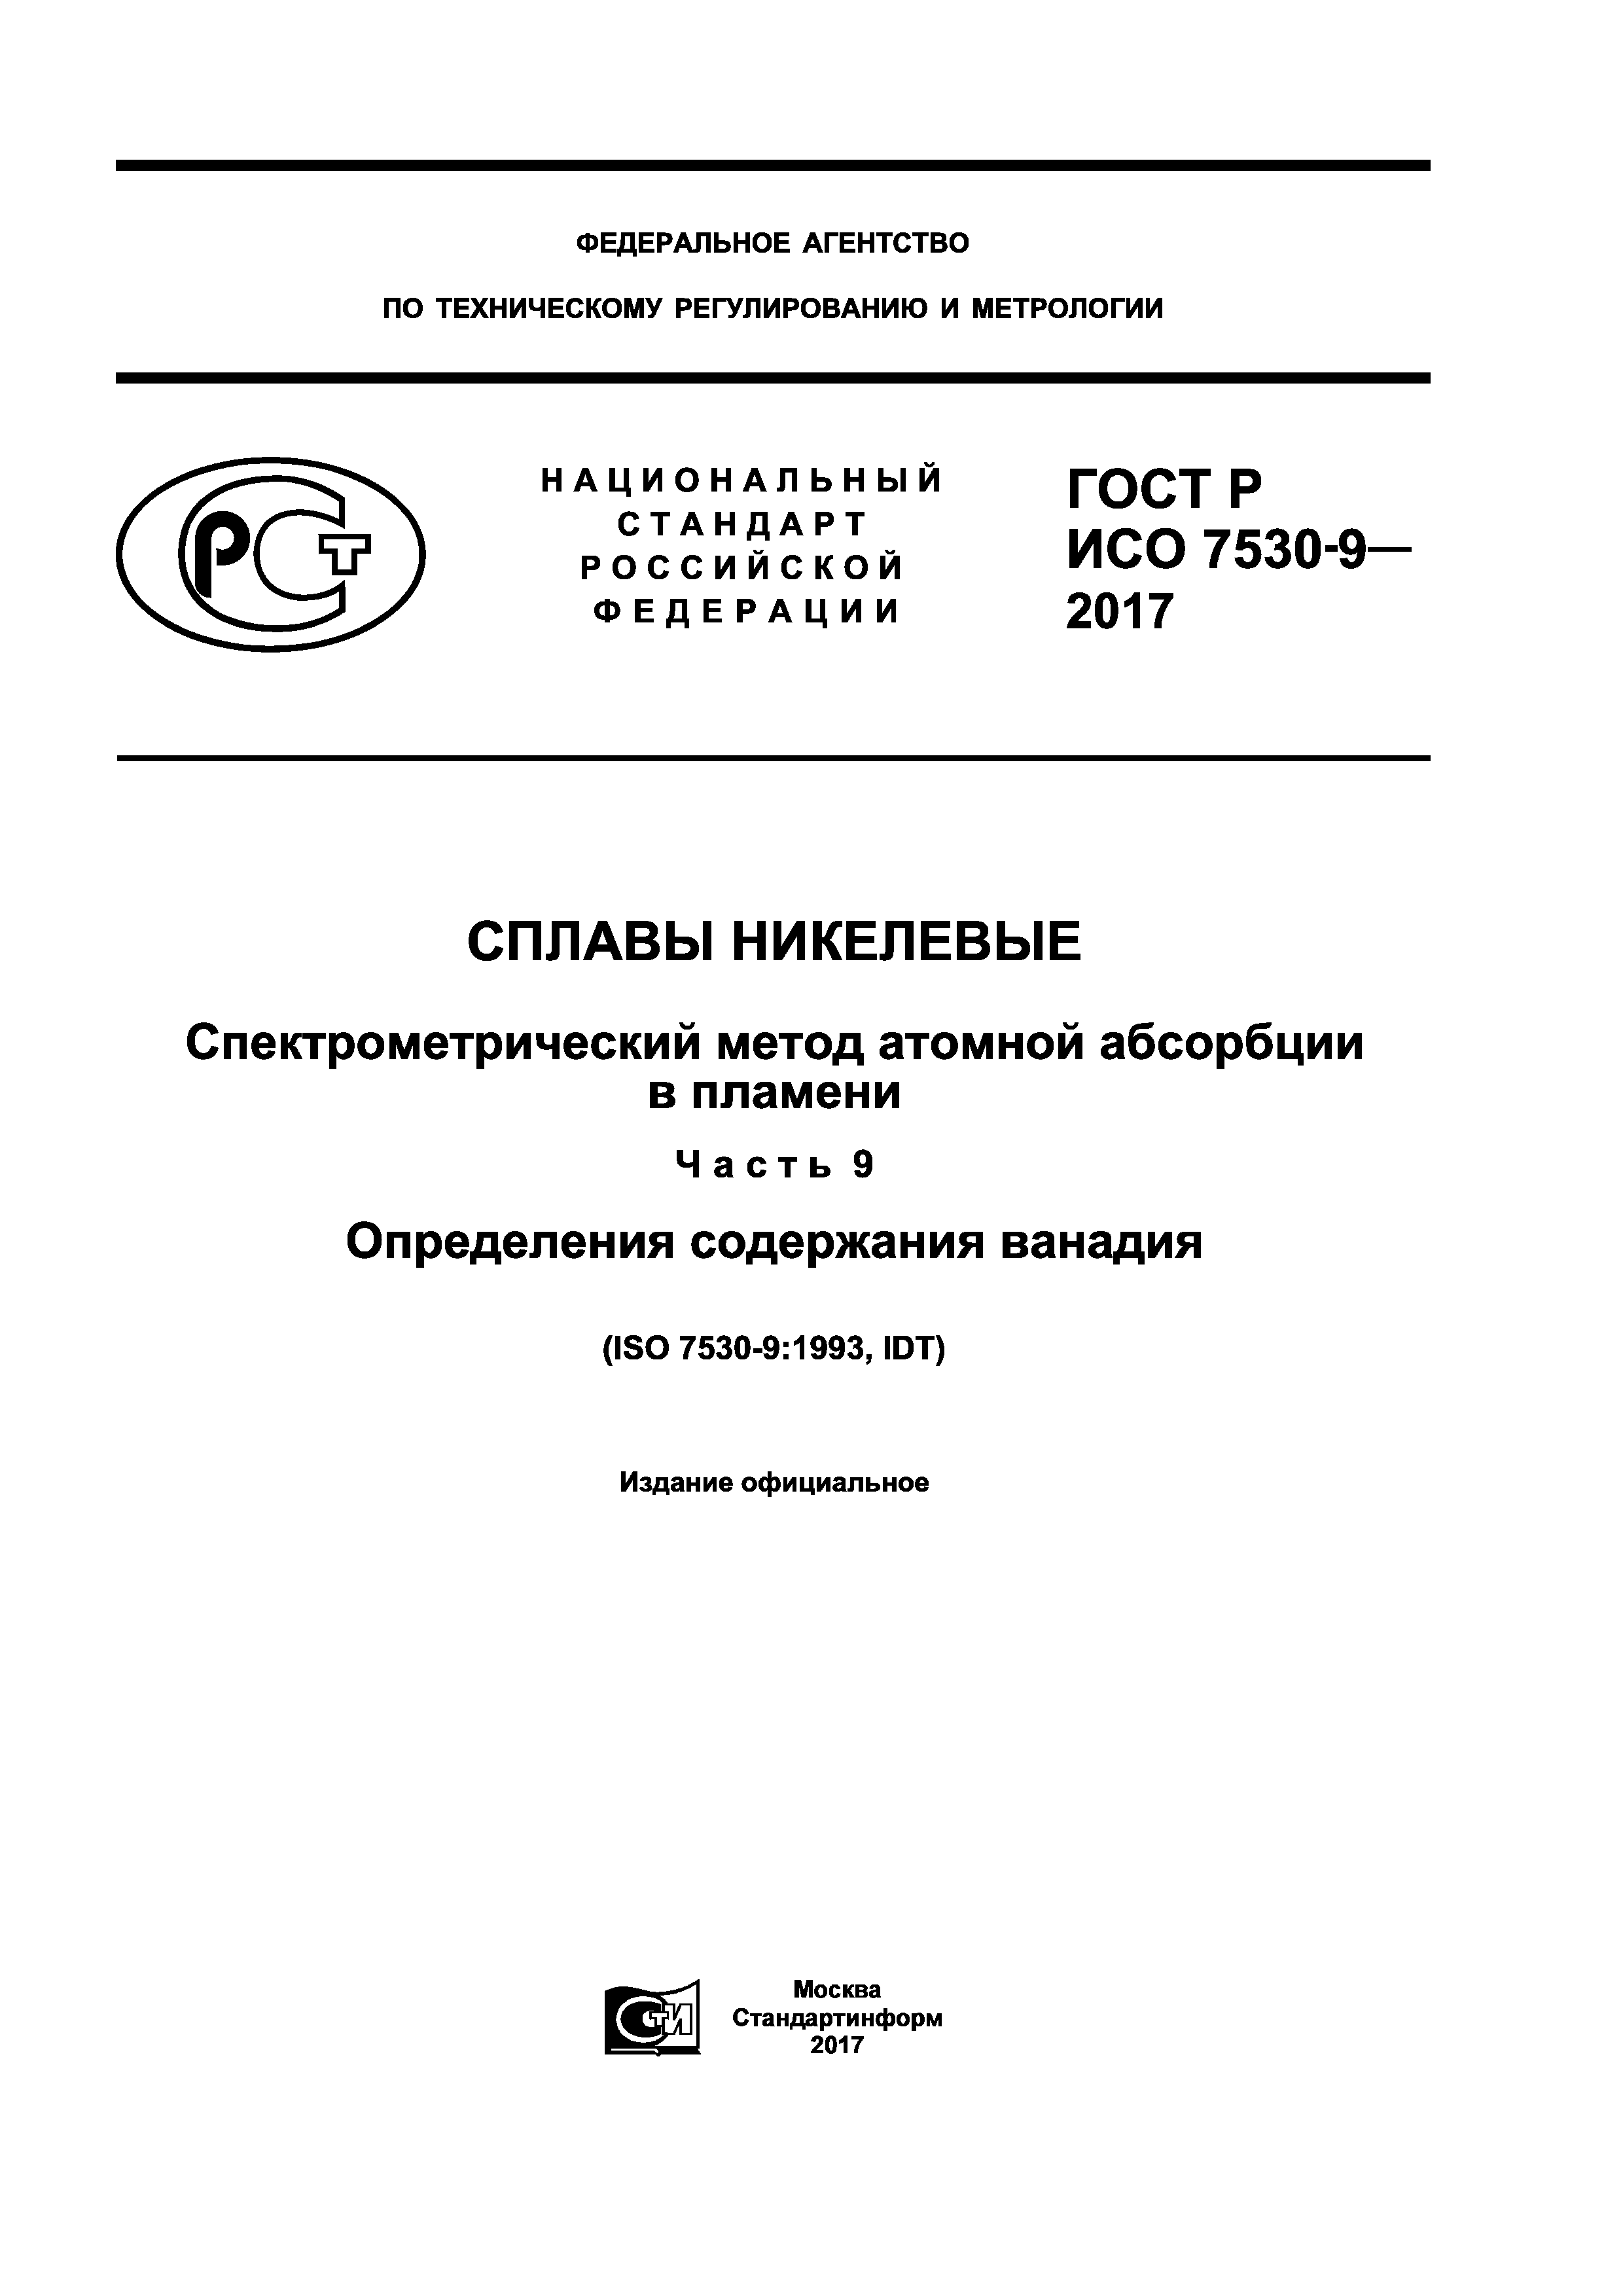 ГОСТ Р ИСО 7530-9-2017